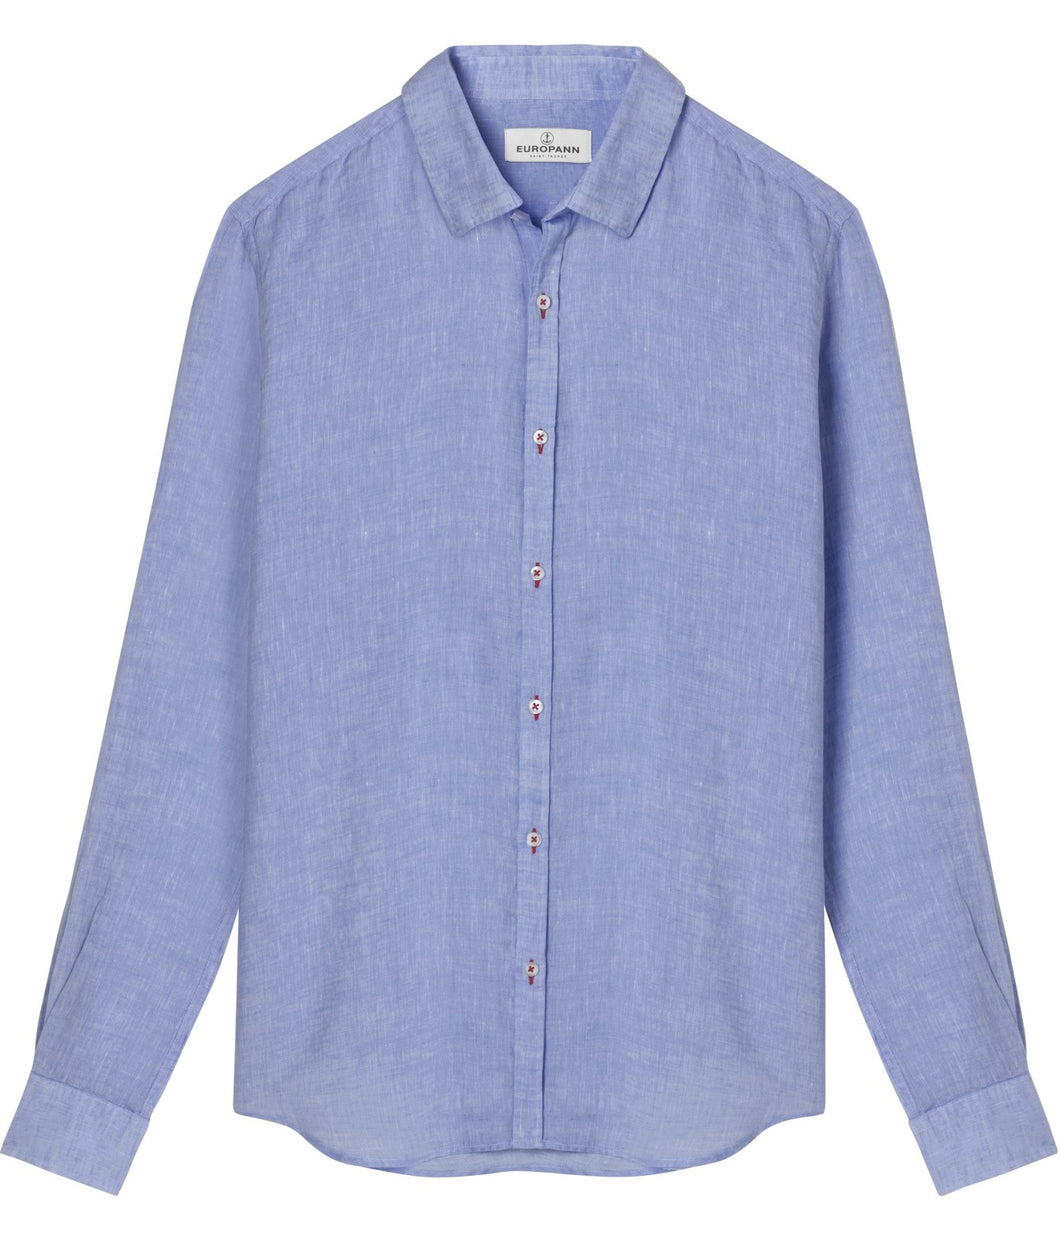 Jonas Ocean Blue - Plain Linen Shirt